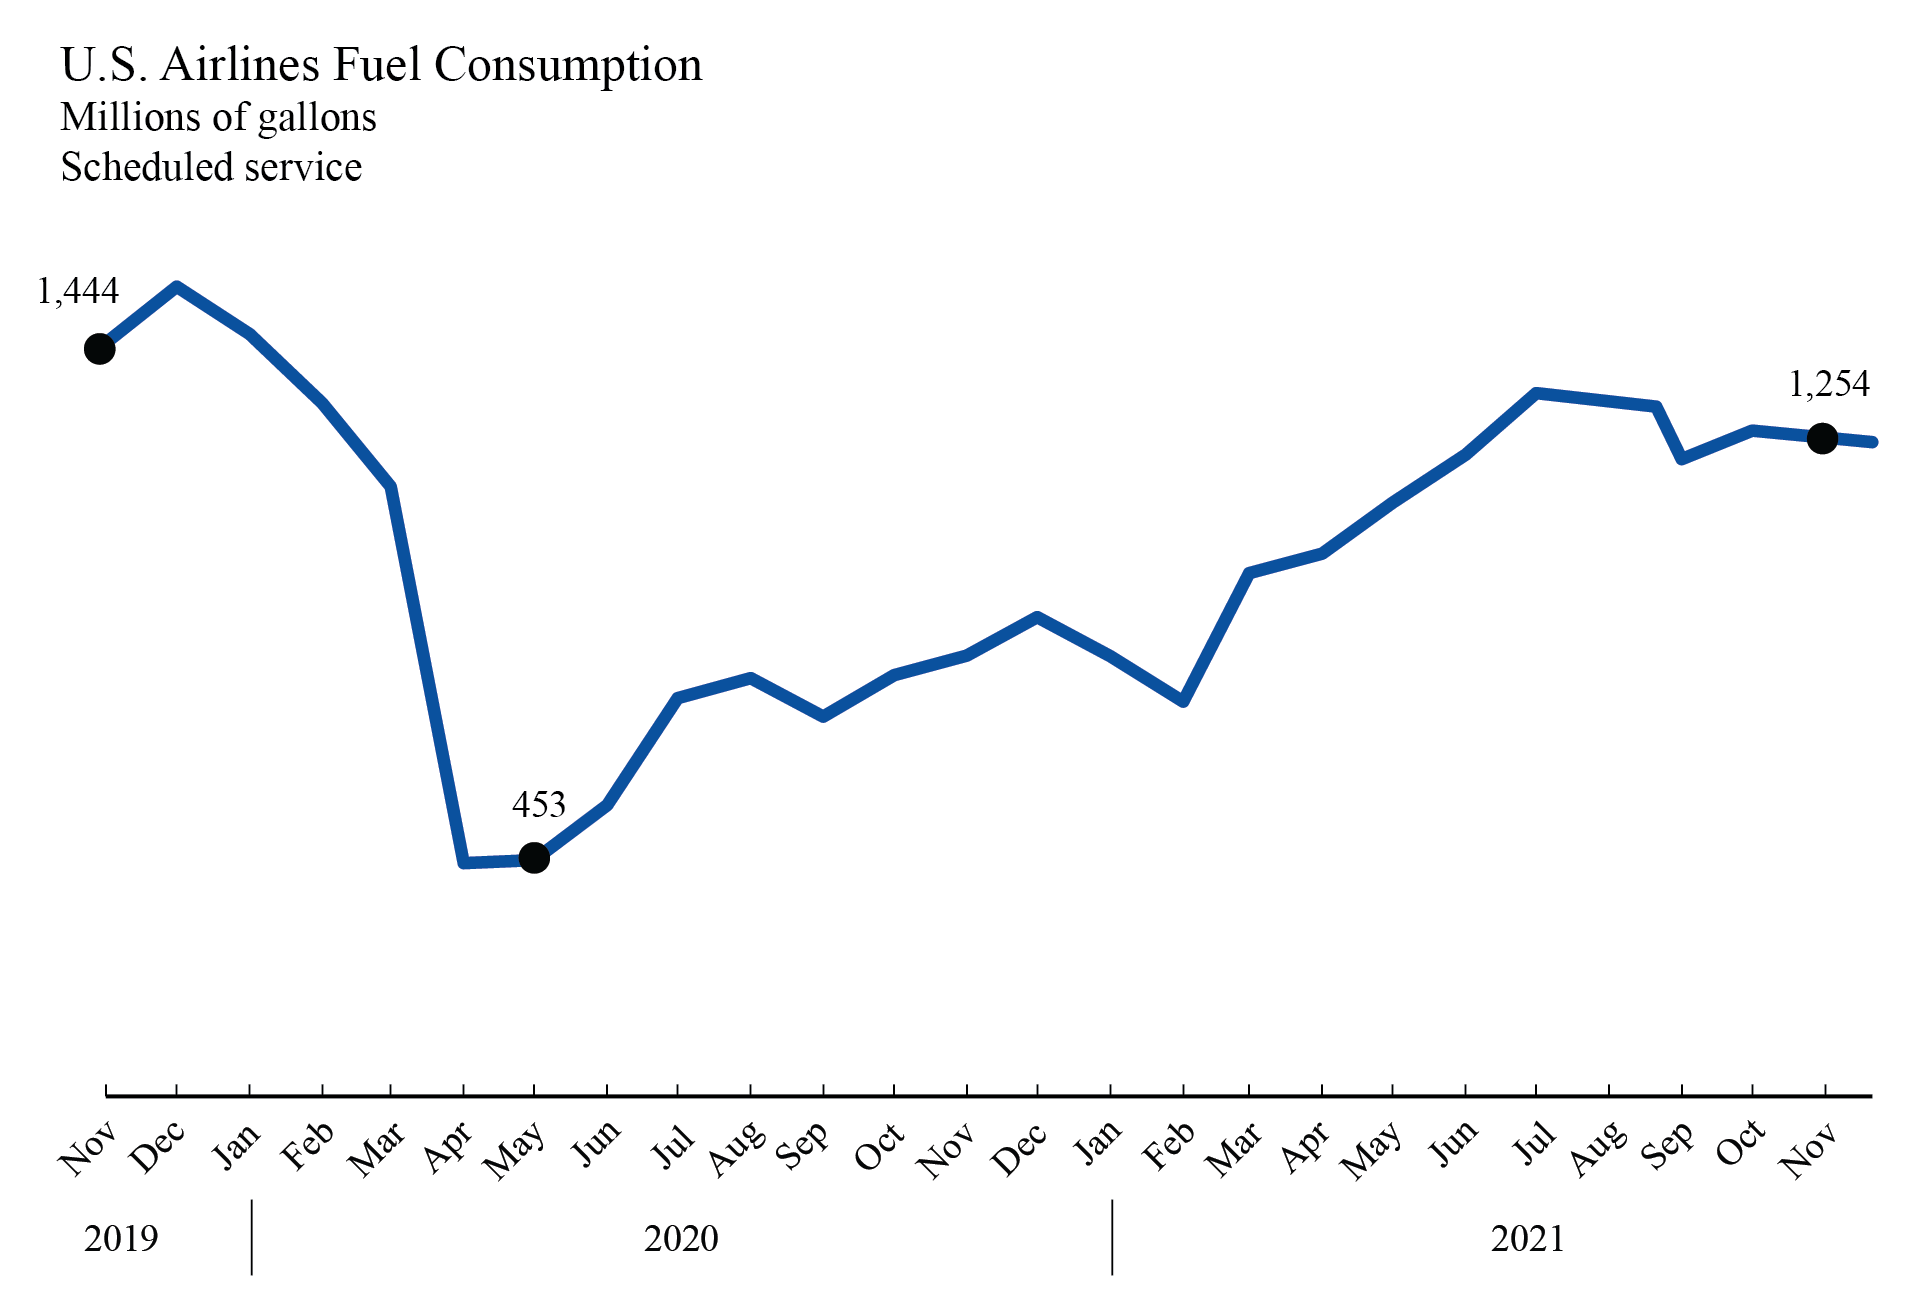 November 2021 Fuel Consumption